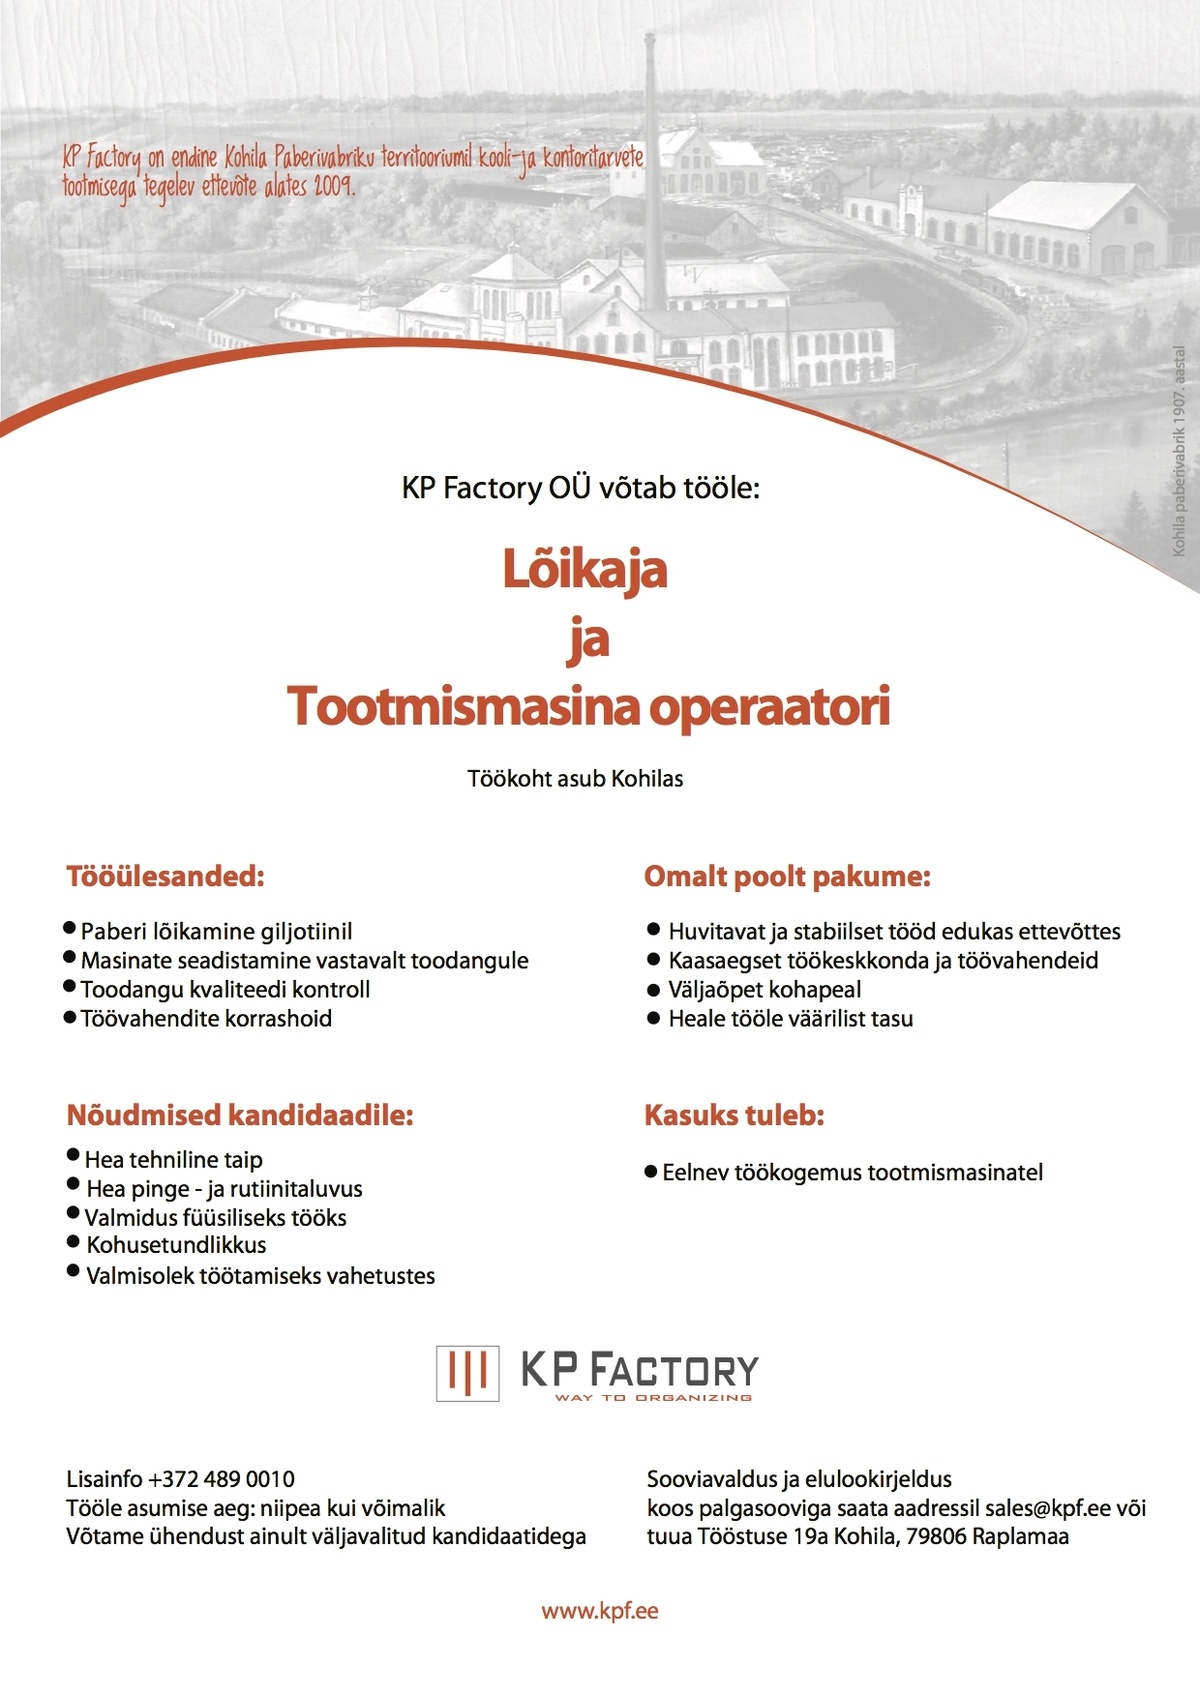 KP Factory OÜ Operaator